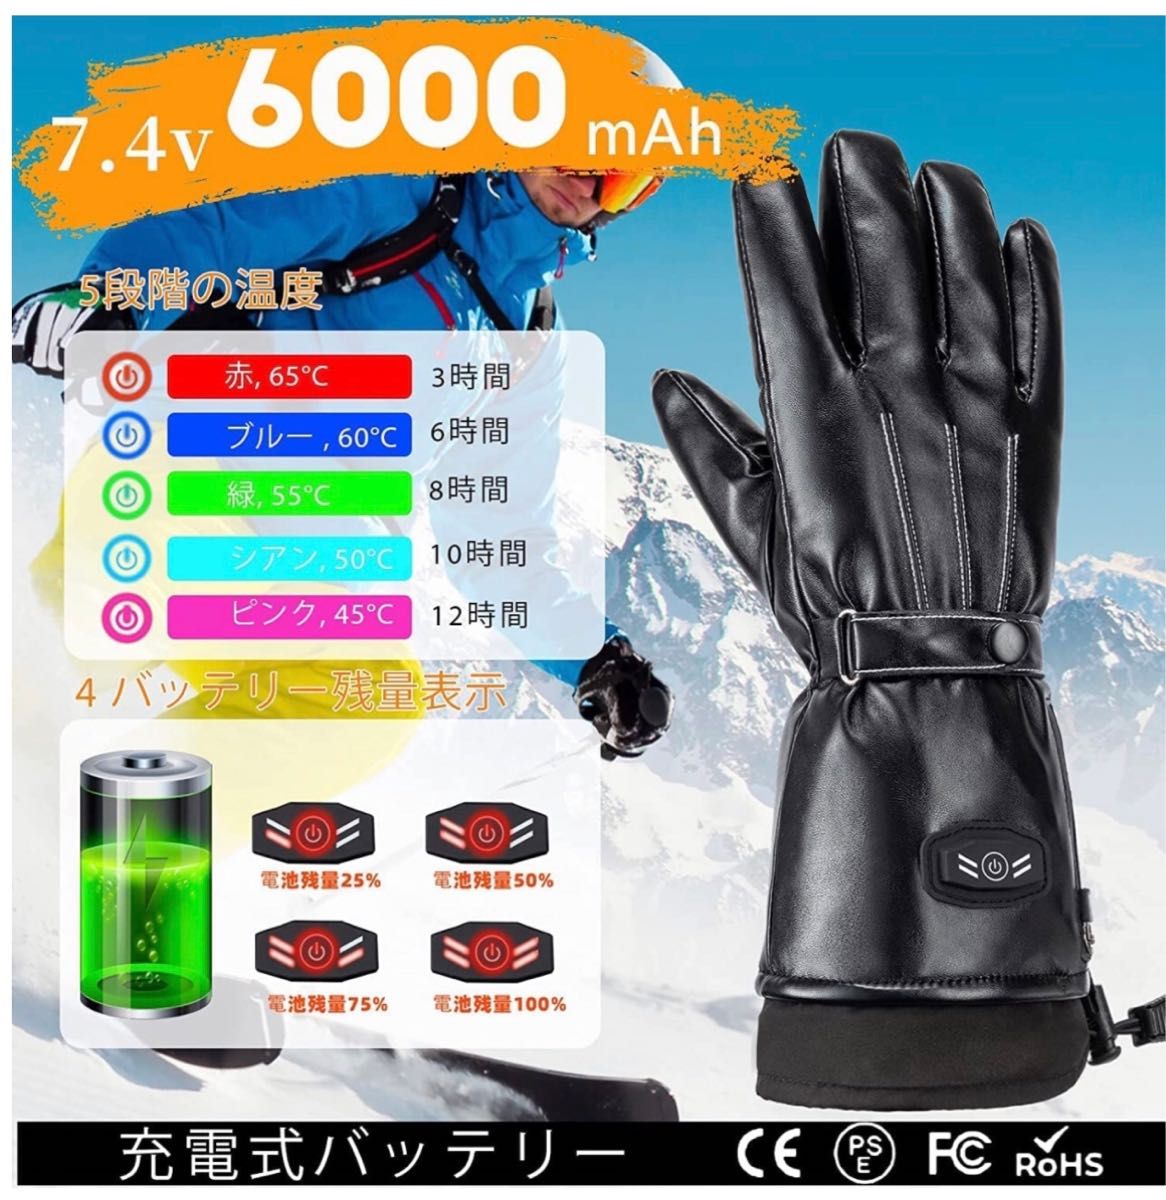 電熱グローブ 皮質 防寒 防水 ヒーター手袋 6000mAh×2個バッテリー付属 usb充電式 電気手袋 タッチパネル対応